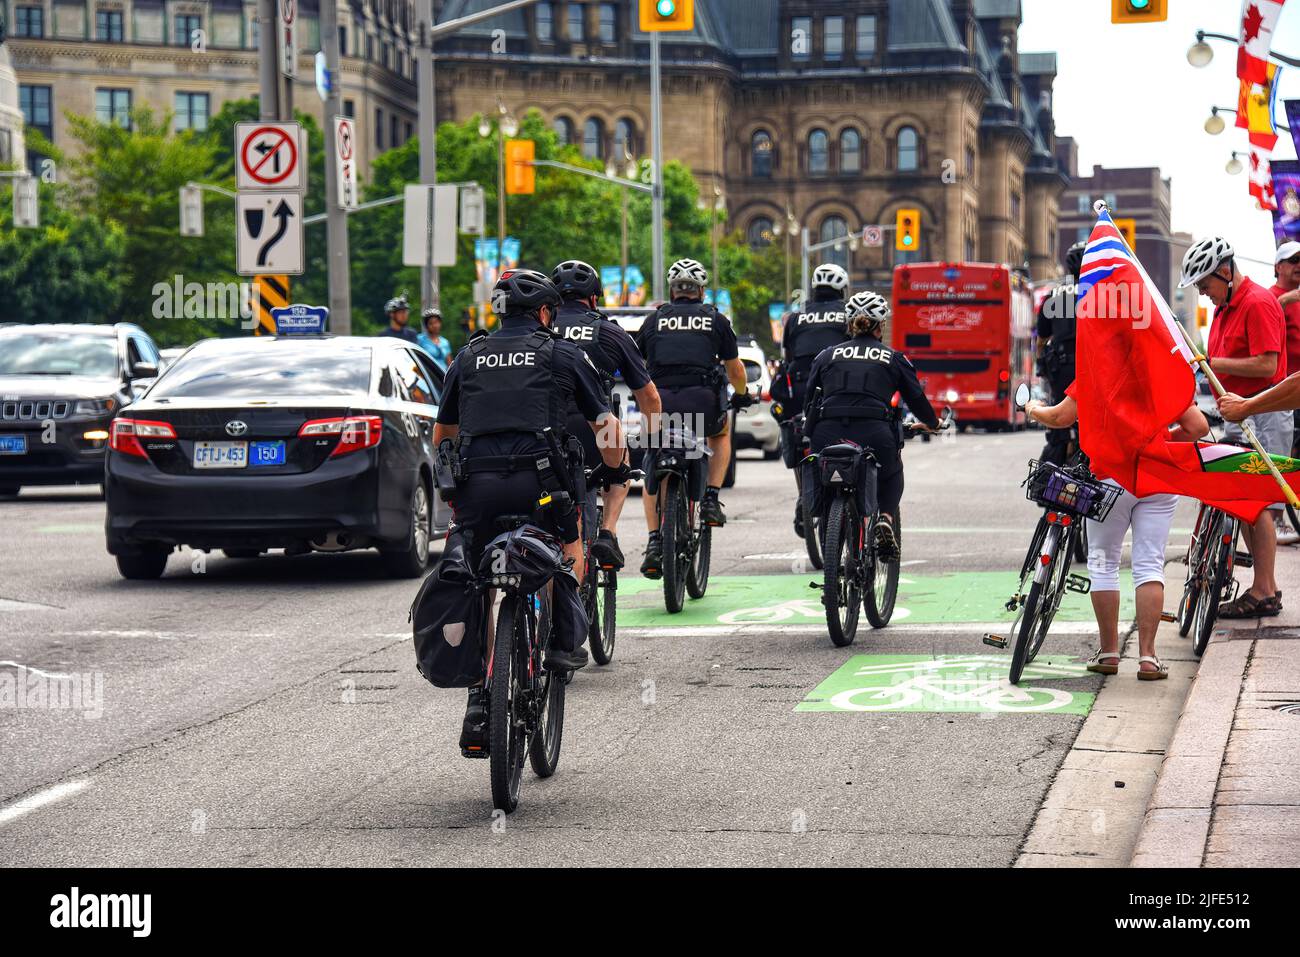 Ottawa, Canada - 1 juillet 2022 : les agents de police à vélo font partie d'une présence accrue de la police pour s'assurer que les célébrations de la fête du Canada ne sont pas perturbées par le mandat anti-vaccin et les manifestants théoriciens de la conspiration venus dans la ville pour protester. Banque D'Images